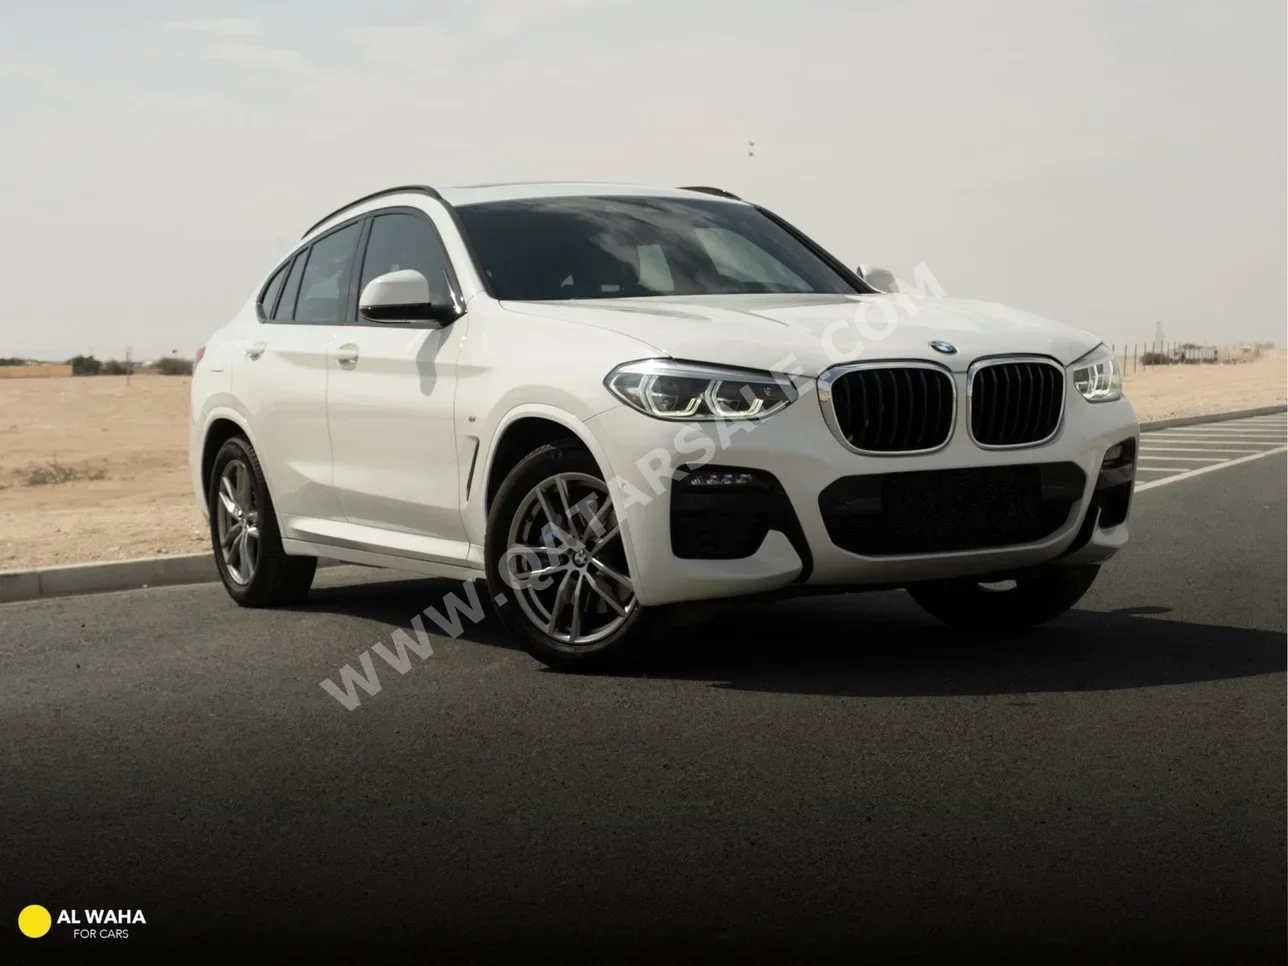 BMW  X-Series  X4 M  2020  Automatic  56,000 Km  4 Cylinder  Four Wheel Drive (4WD)  SUV  White  With Warranty